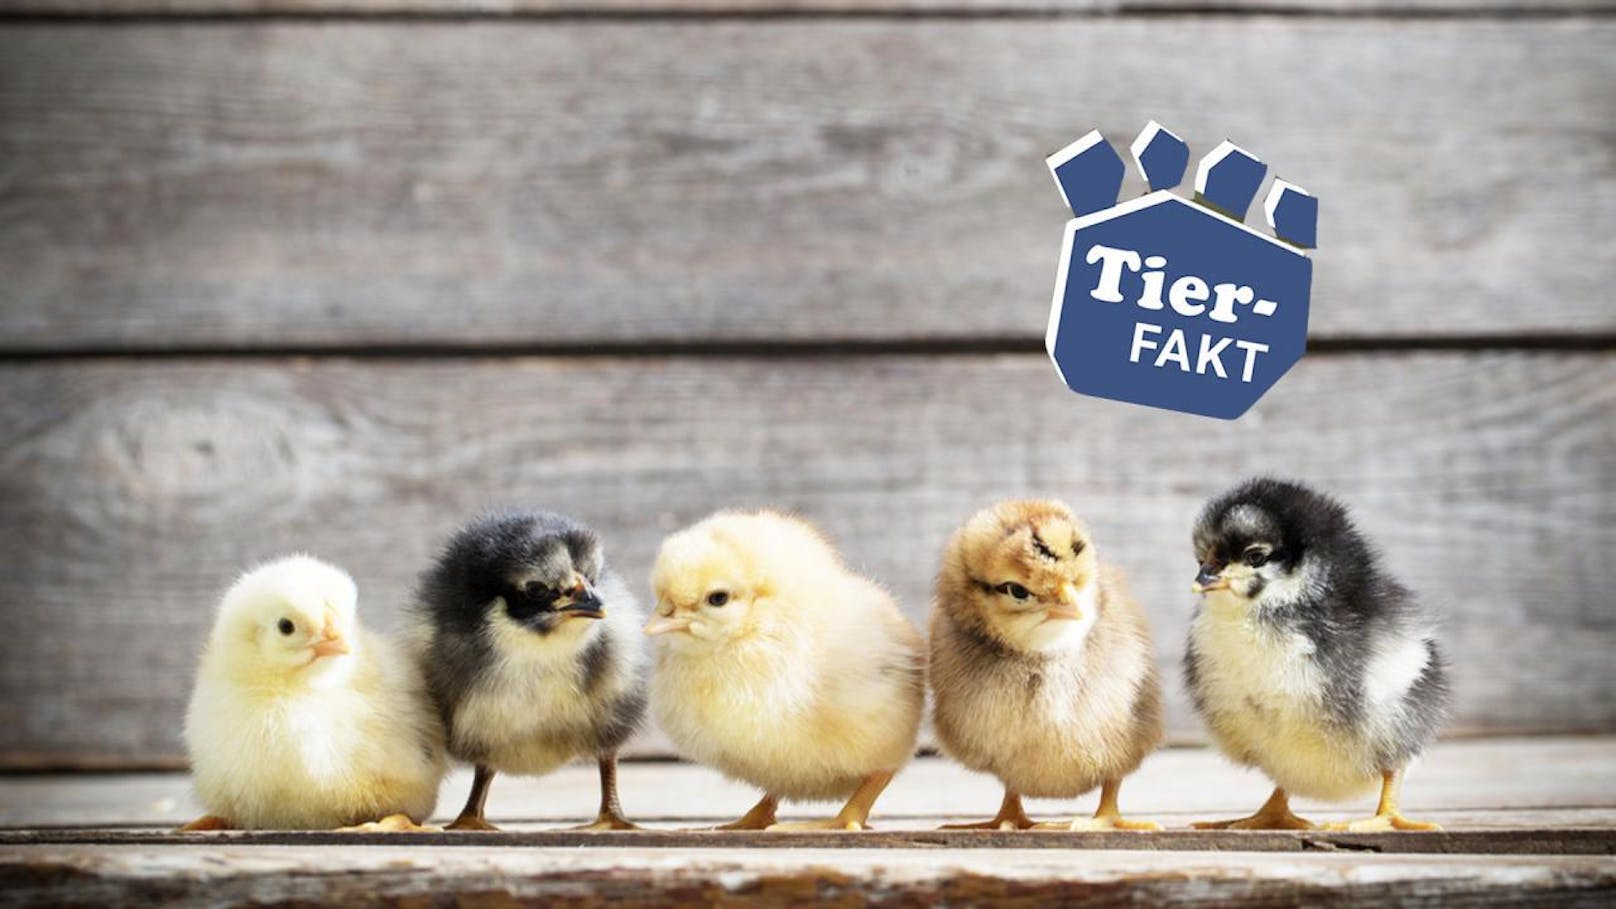 Studie zeigt, dass Hühner klüger sind als gedacht. Sie können zählen - und das schon im Kindesalter. Italienische Forscher fanden in einem Experiment heraus, dass Küken zumindest bis 5 zählen können.